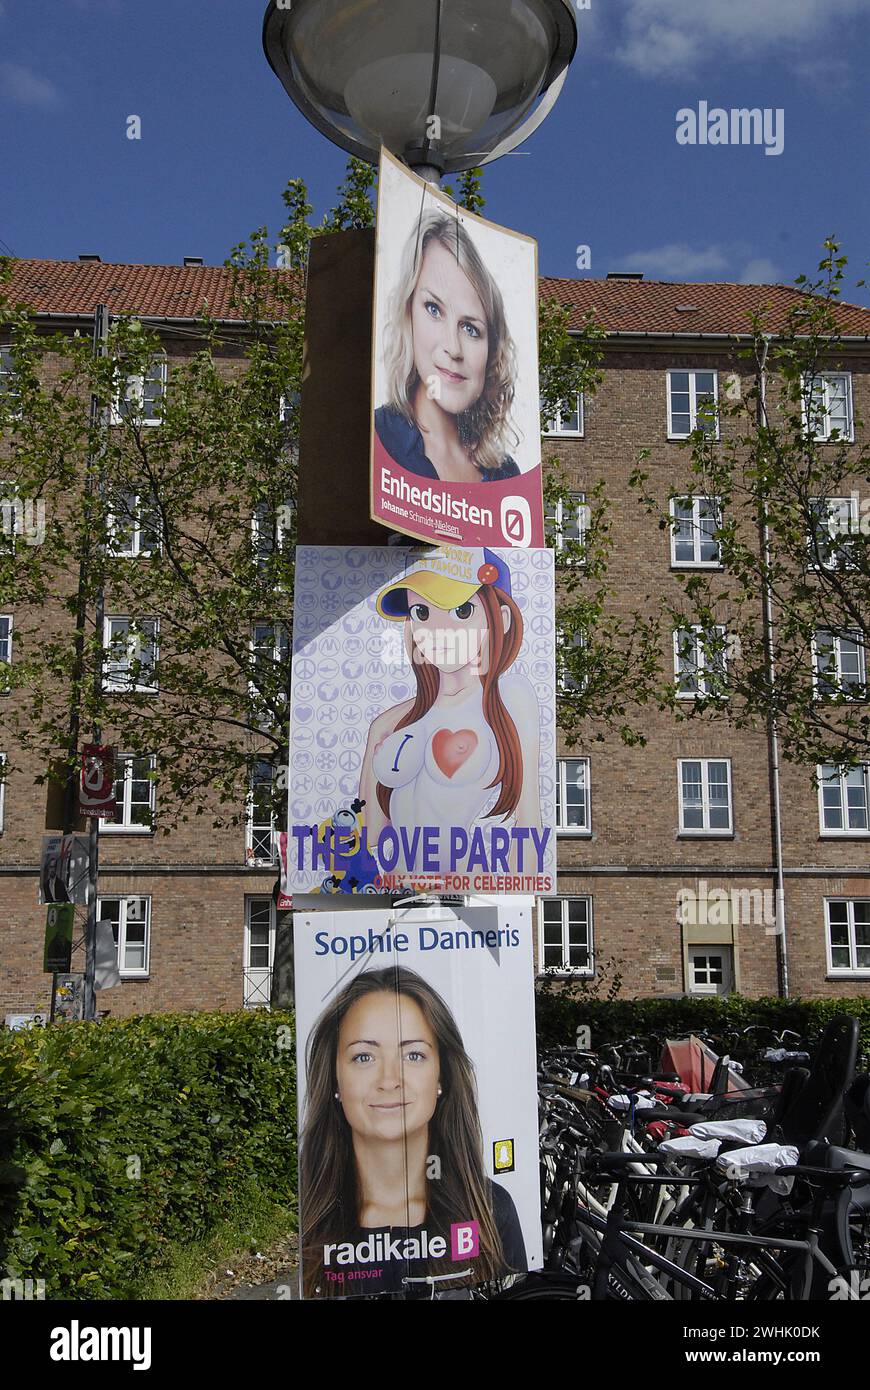 KOPENHAGEN/DÄNEMARK. 9. Juni 2015  Fake Wahlplakat unter dänischen Servious Wahlen Plakat der Liebe-Partei (Foto von Francis Joseph Dean/Deanpictures) Stockfoto